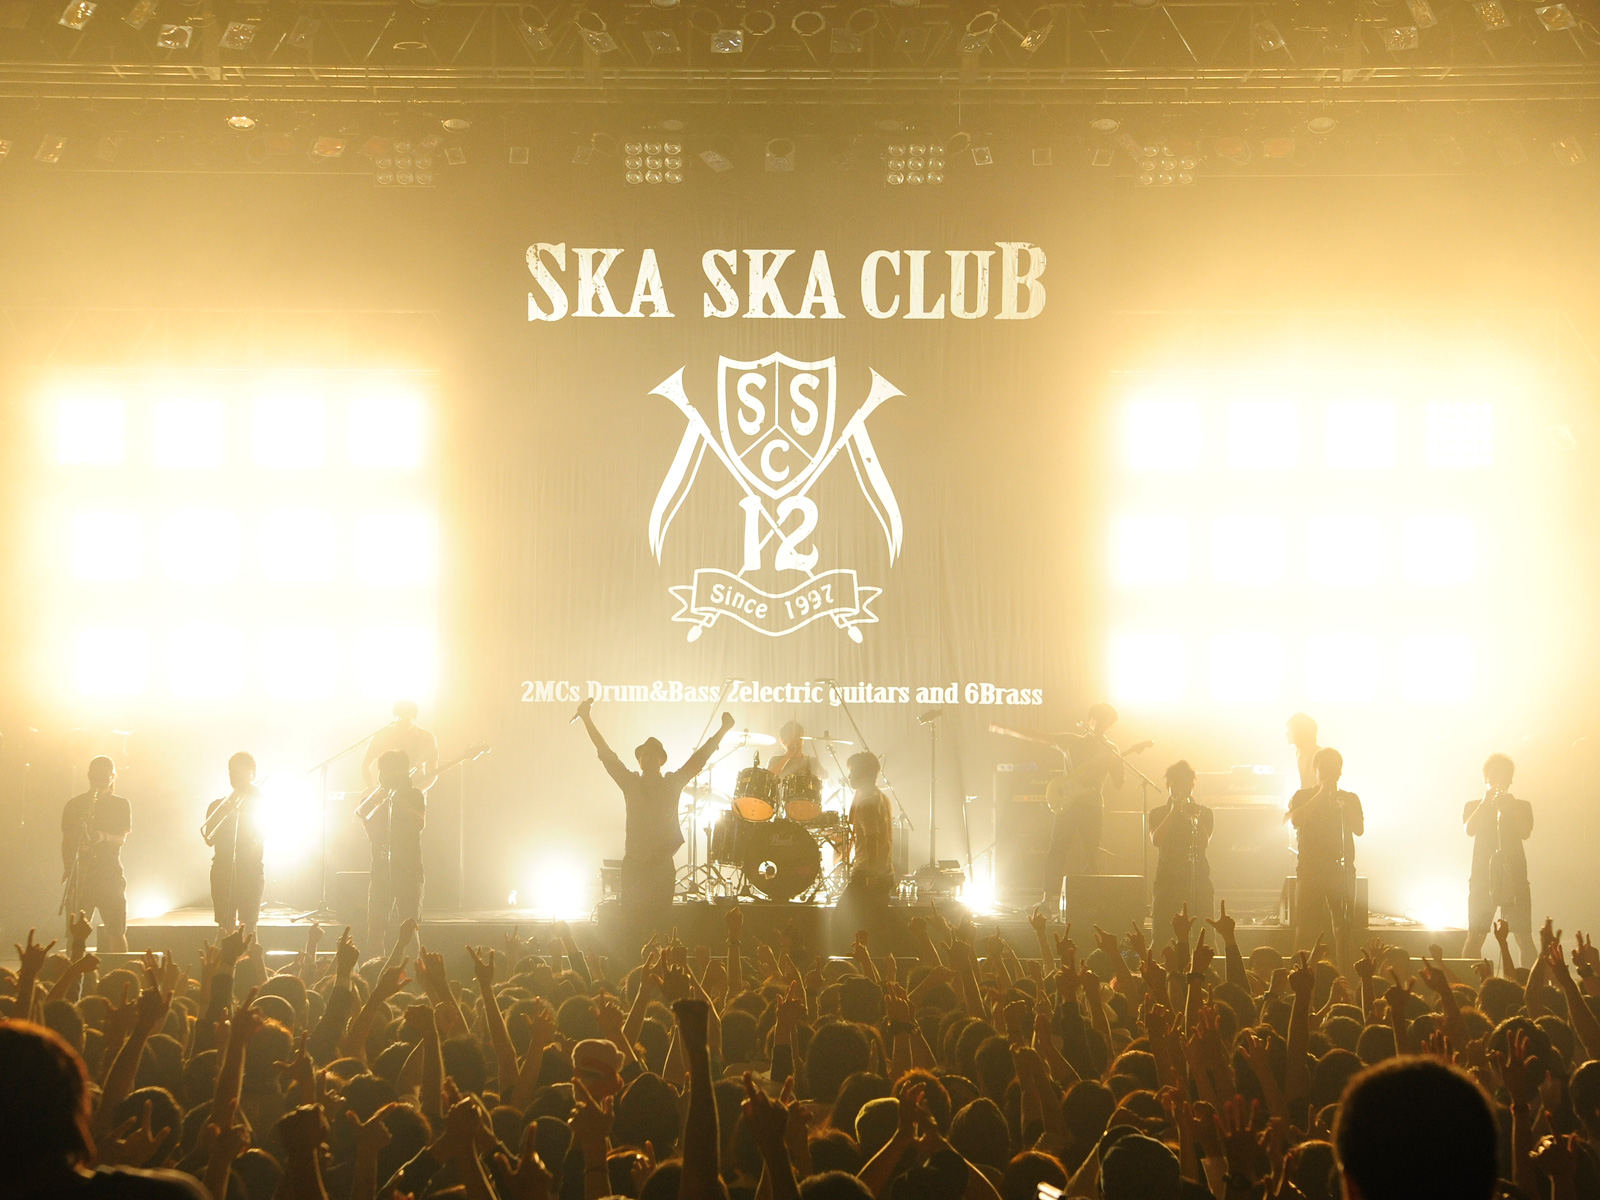 SKA SKA CLUB official website